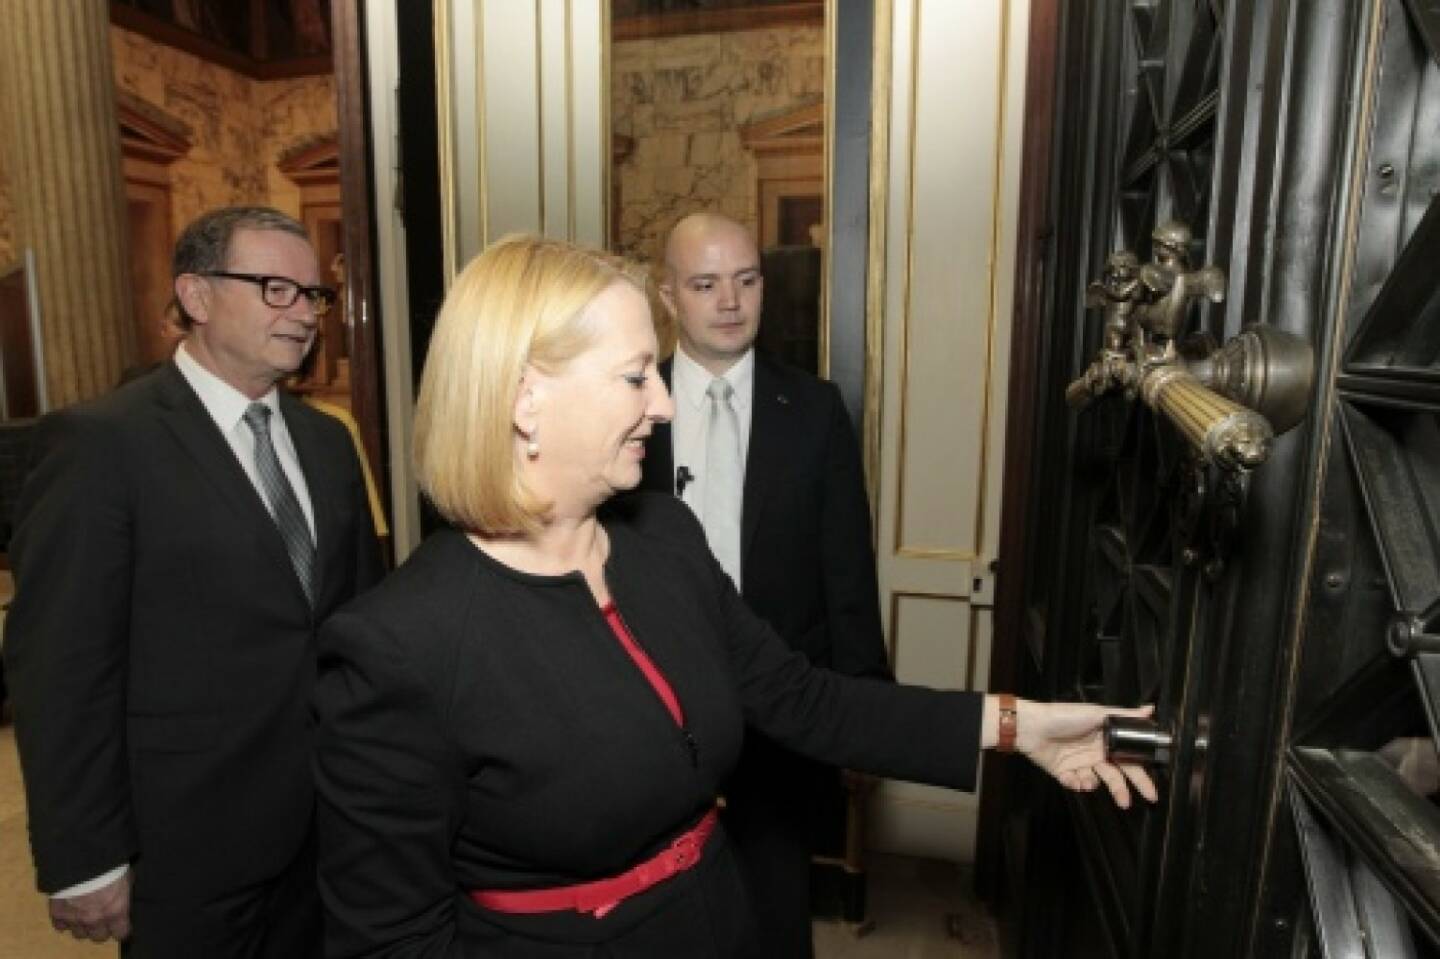 Nationalratsprösidentin Doris Bures öffnet das Hauptportal für die BesucherInnen